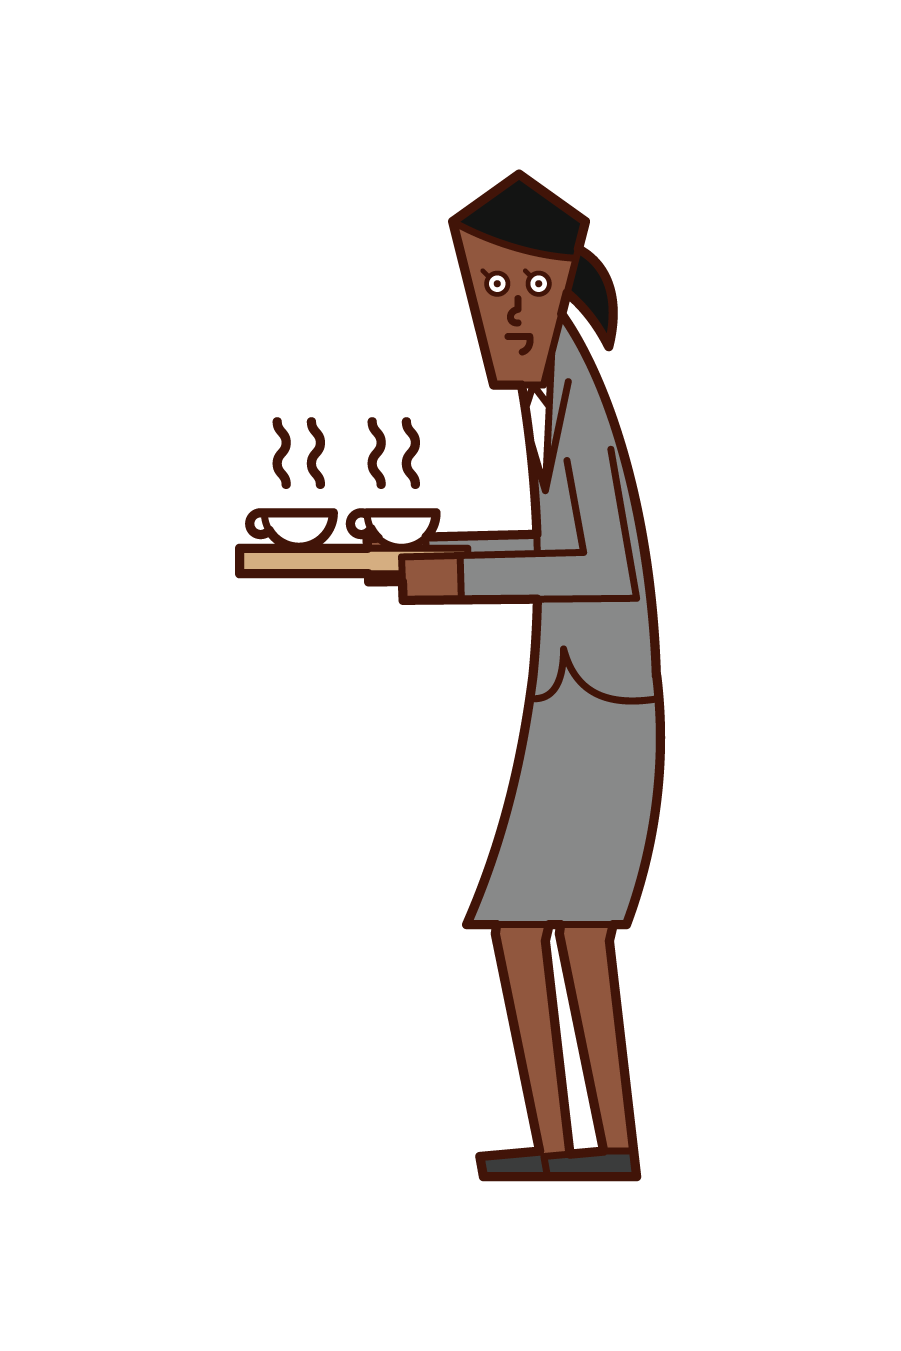 차와 커피를 제공하는 사람 (여성)의 그림